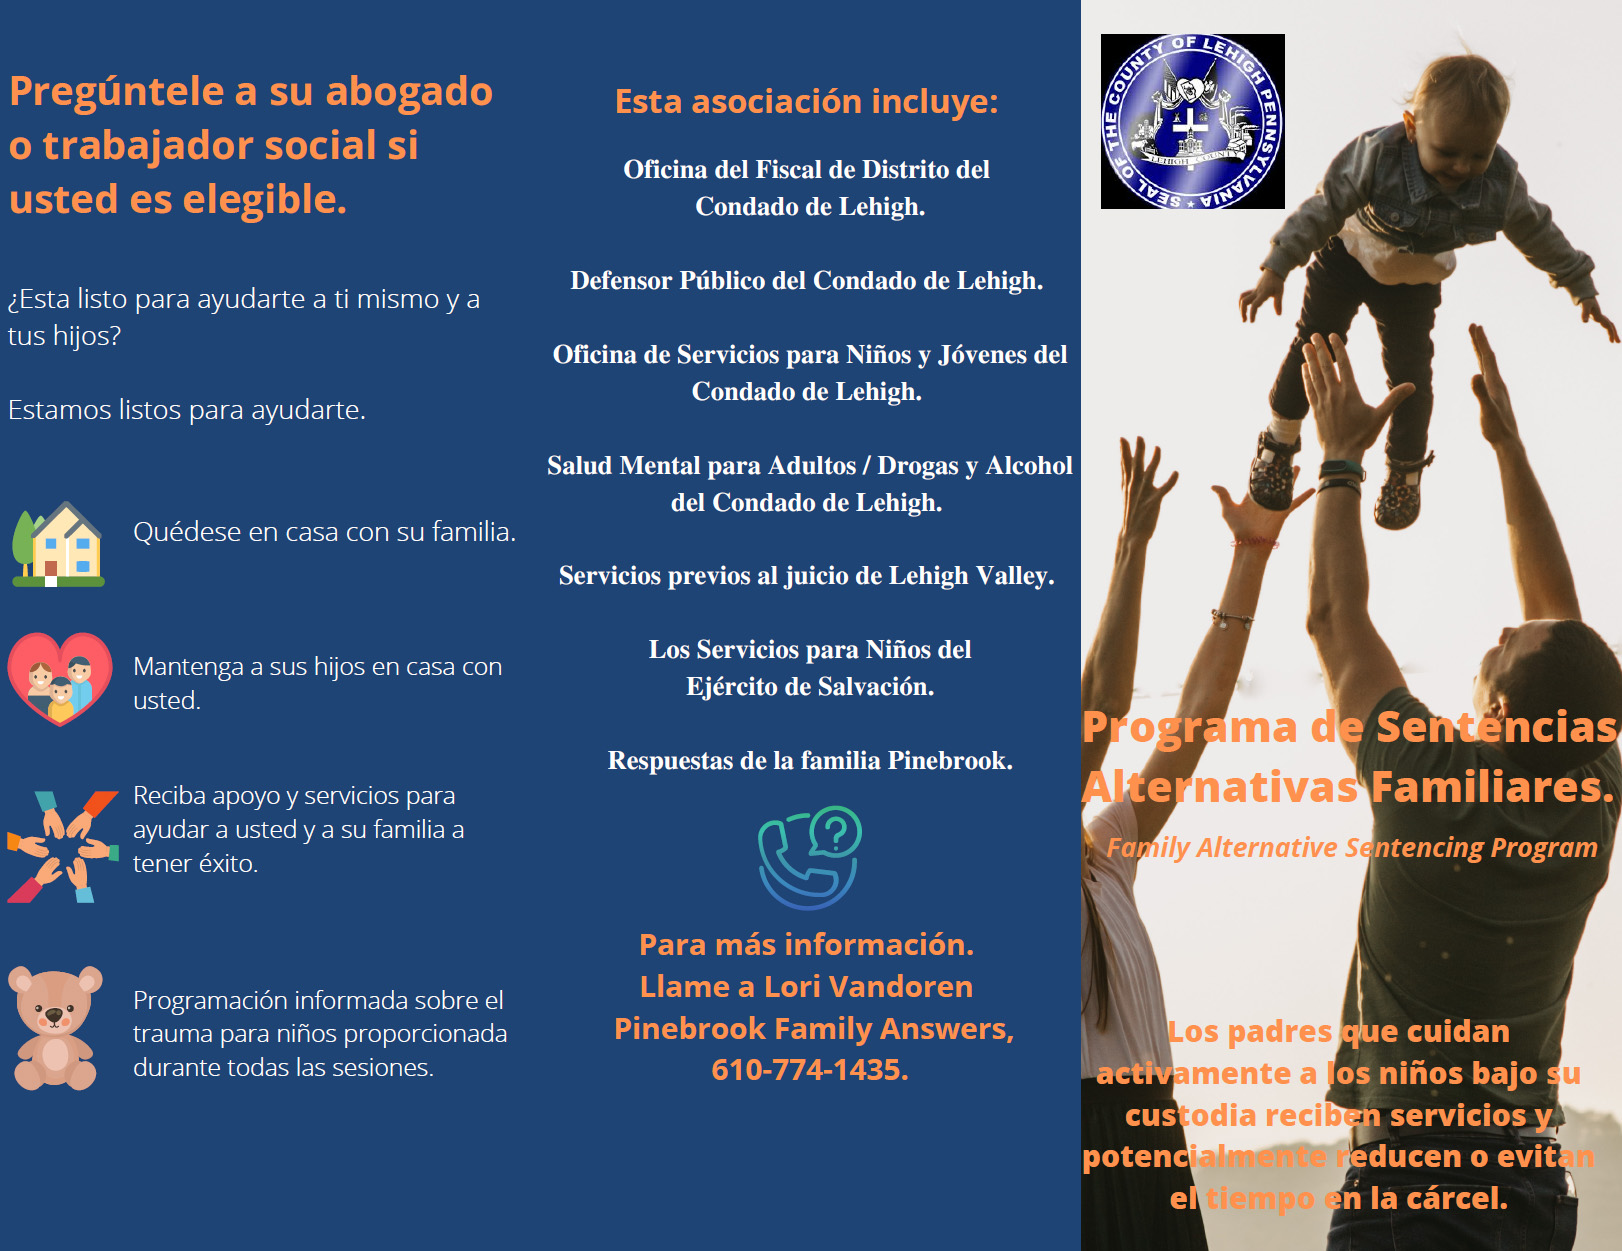 Family Alternative Sentencing Program PDF file in Spanish